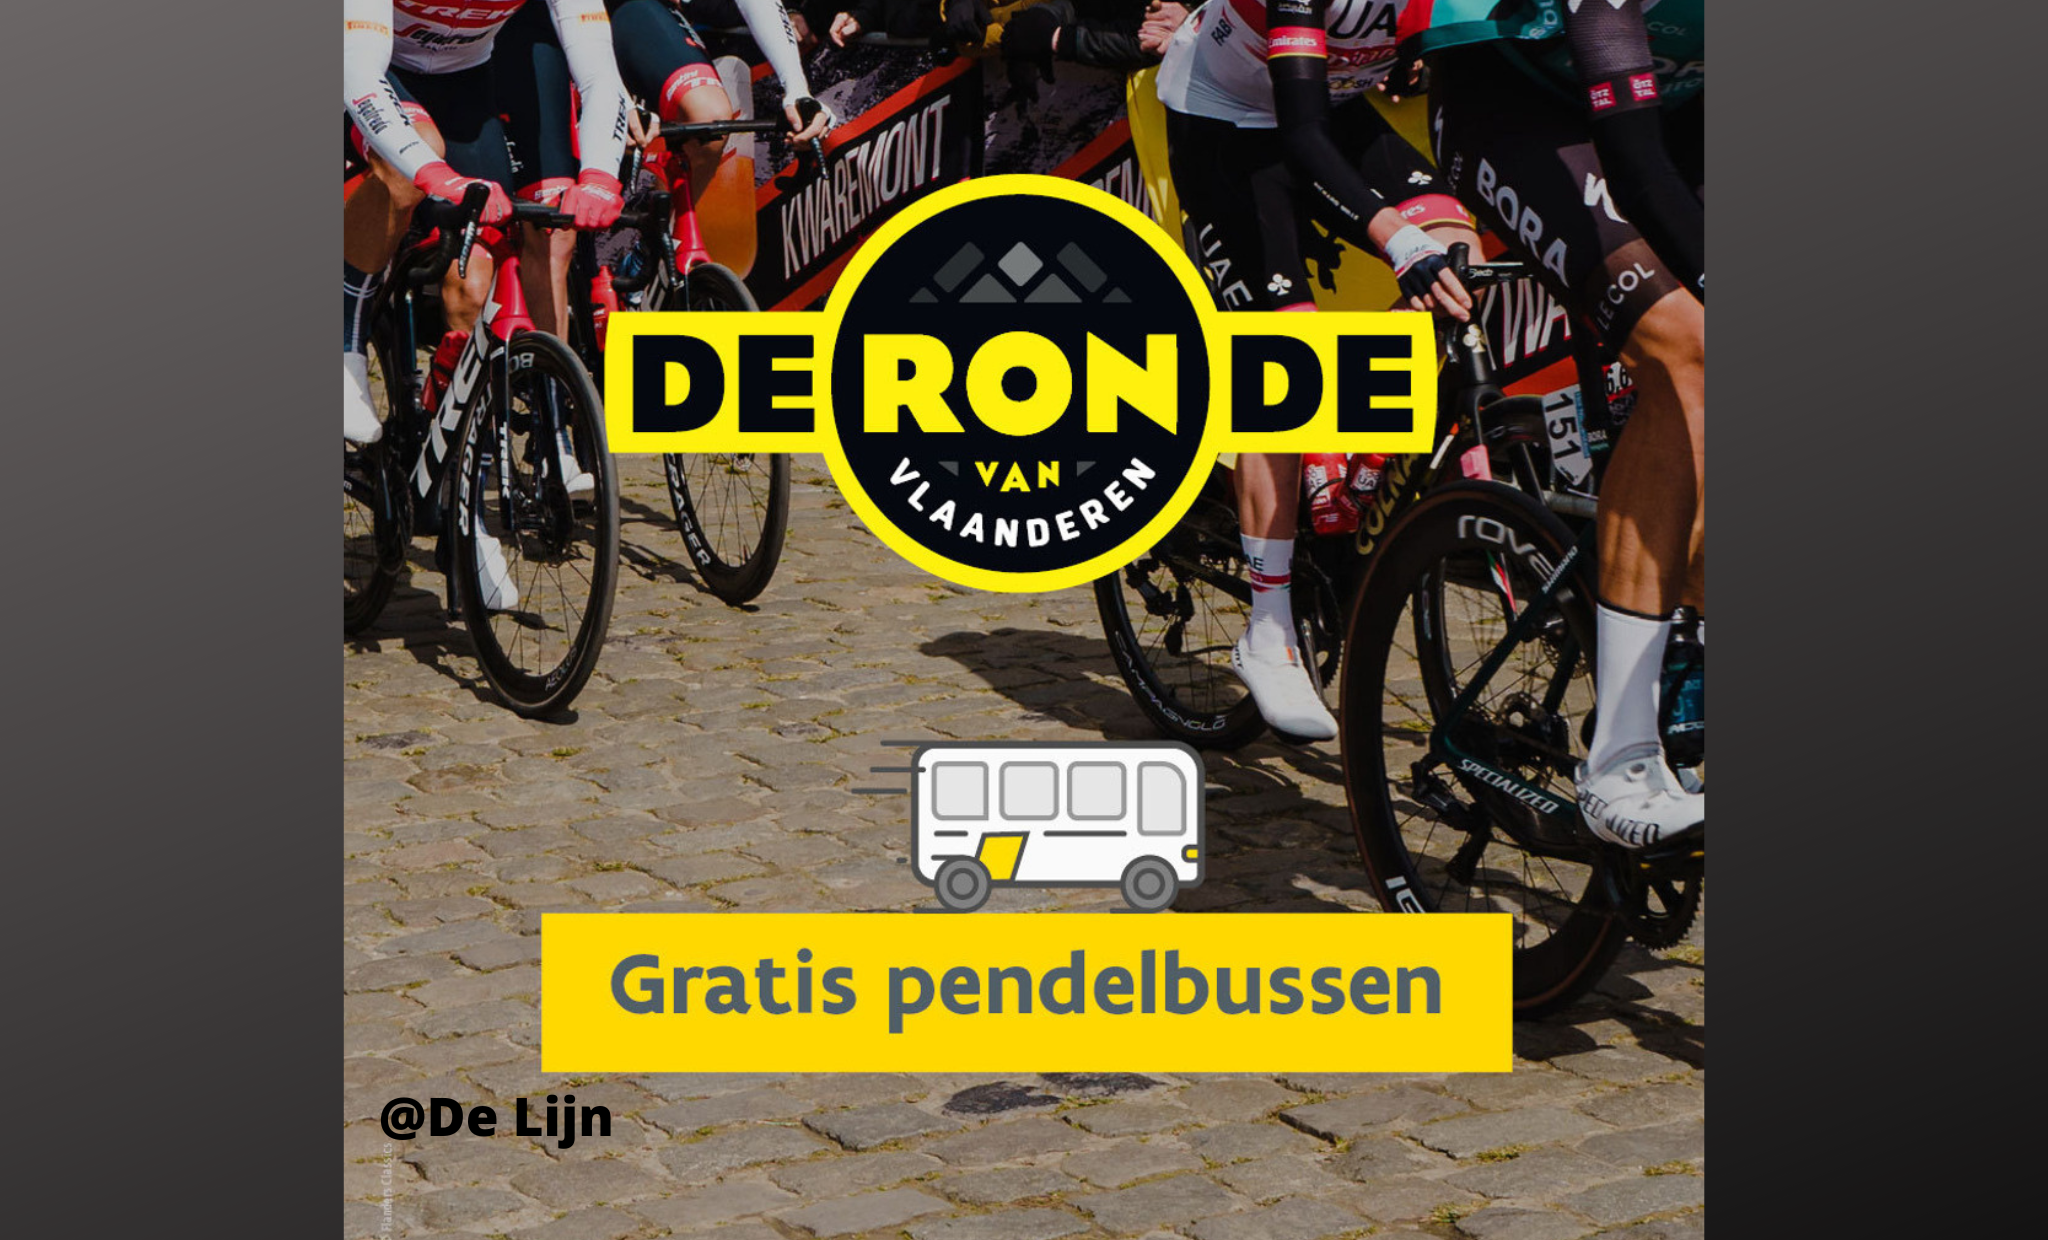 Gratis met pendelbussen De Lijn naar Ronde van Vlaanderen